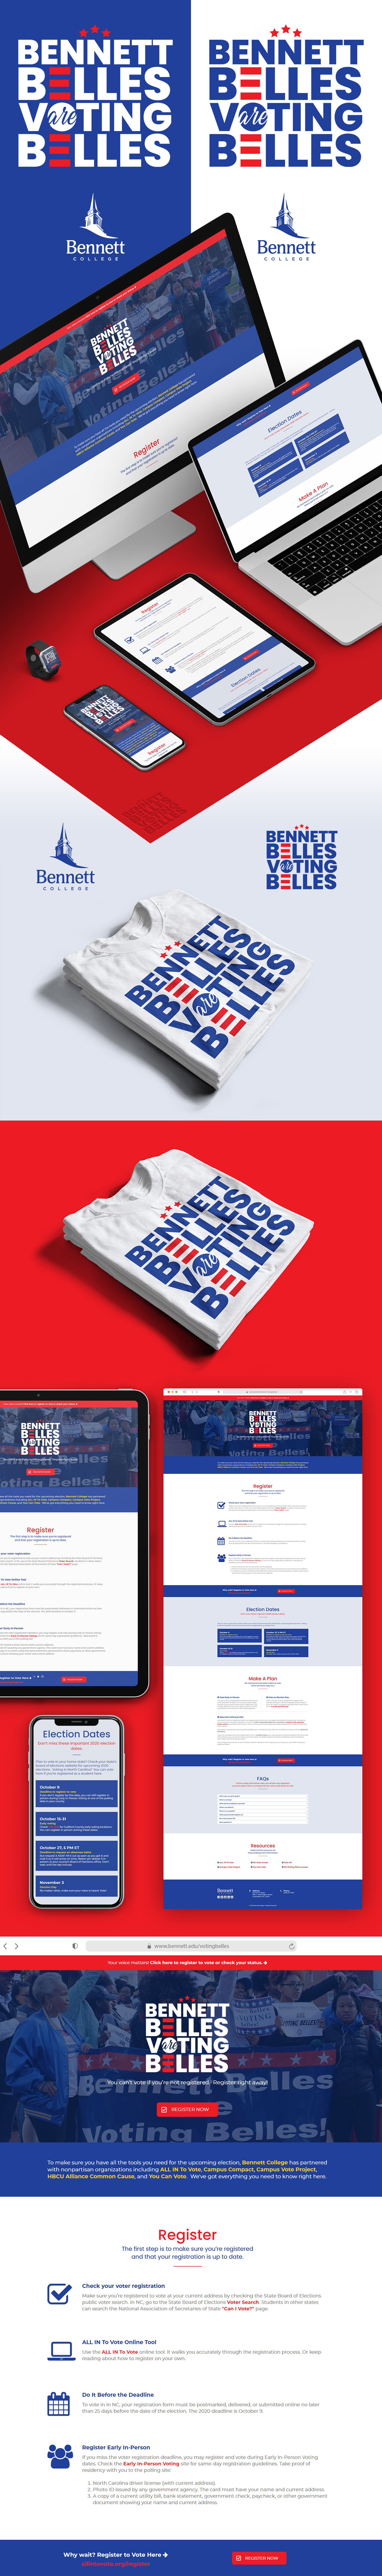 apparel college HBCU logo patriotism politics University vote voting Website